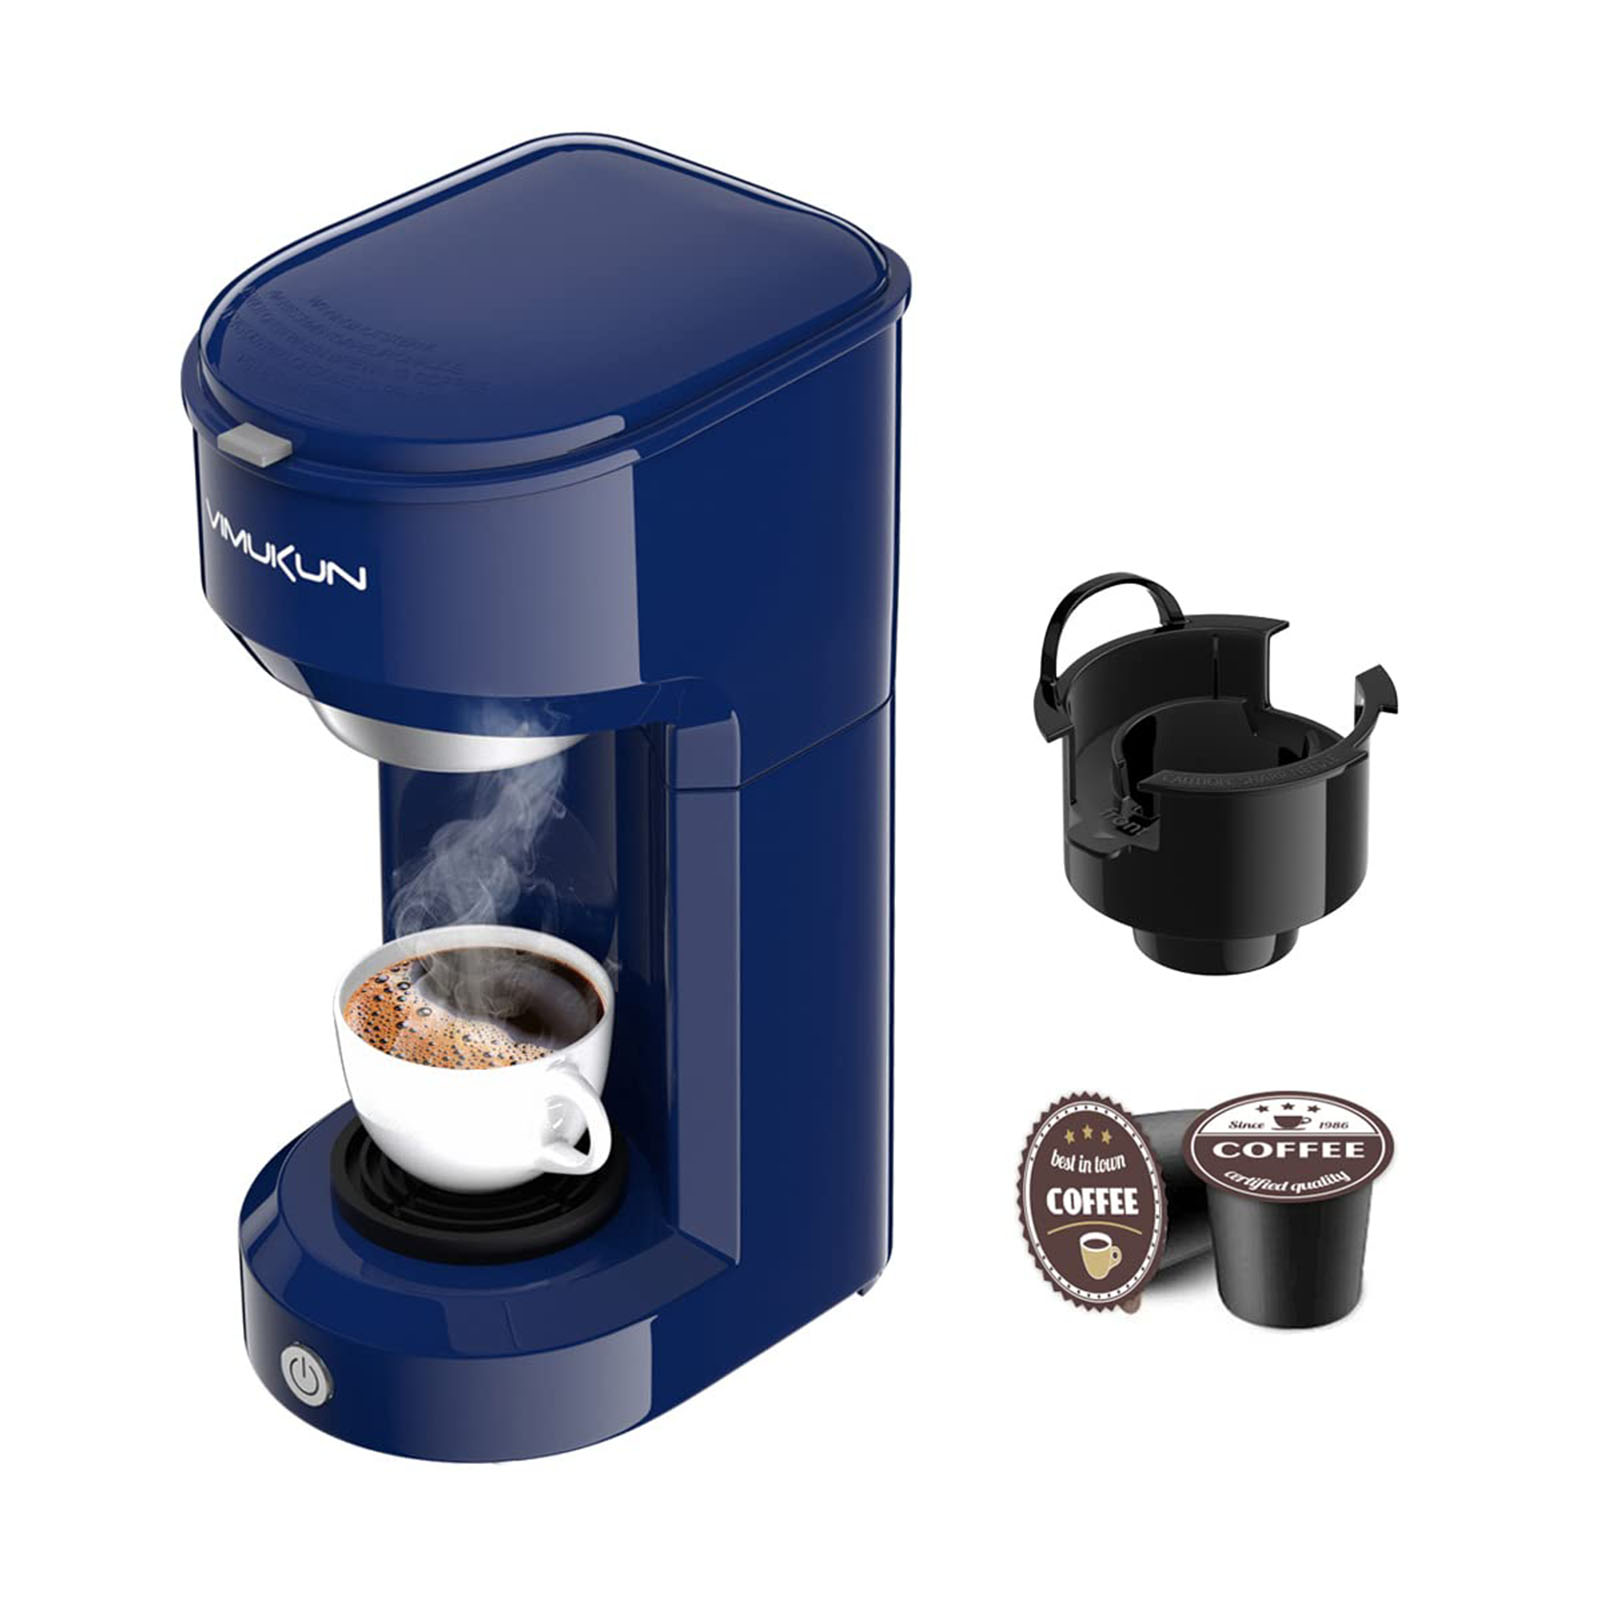 Mixpresso Cafetera de una sola taza, cafetera personal de una sola porción,  compatible con tazas individuales, tecnología de preparación rápida